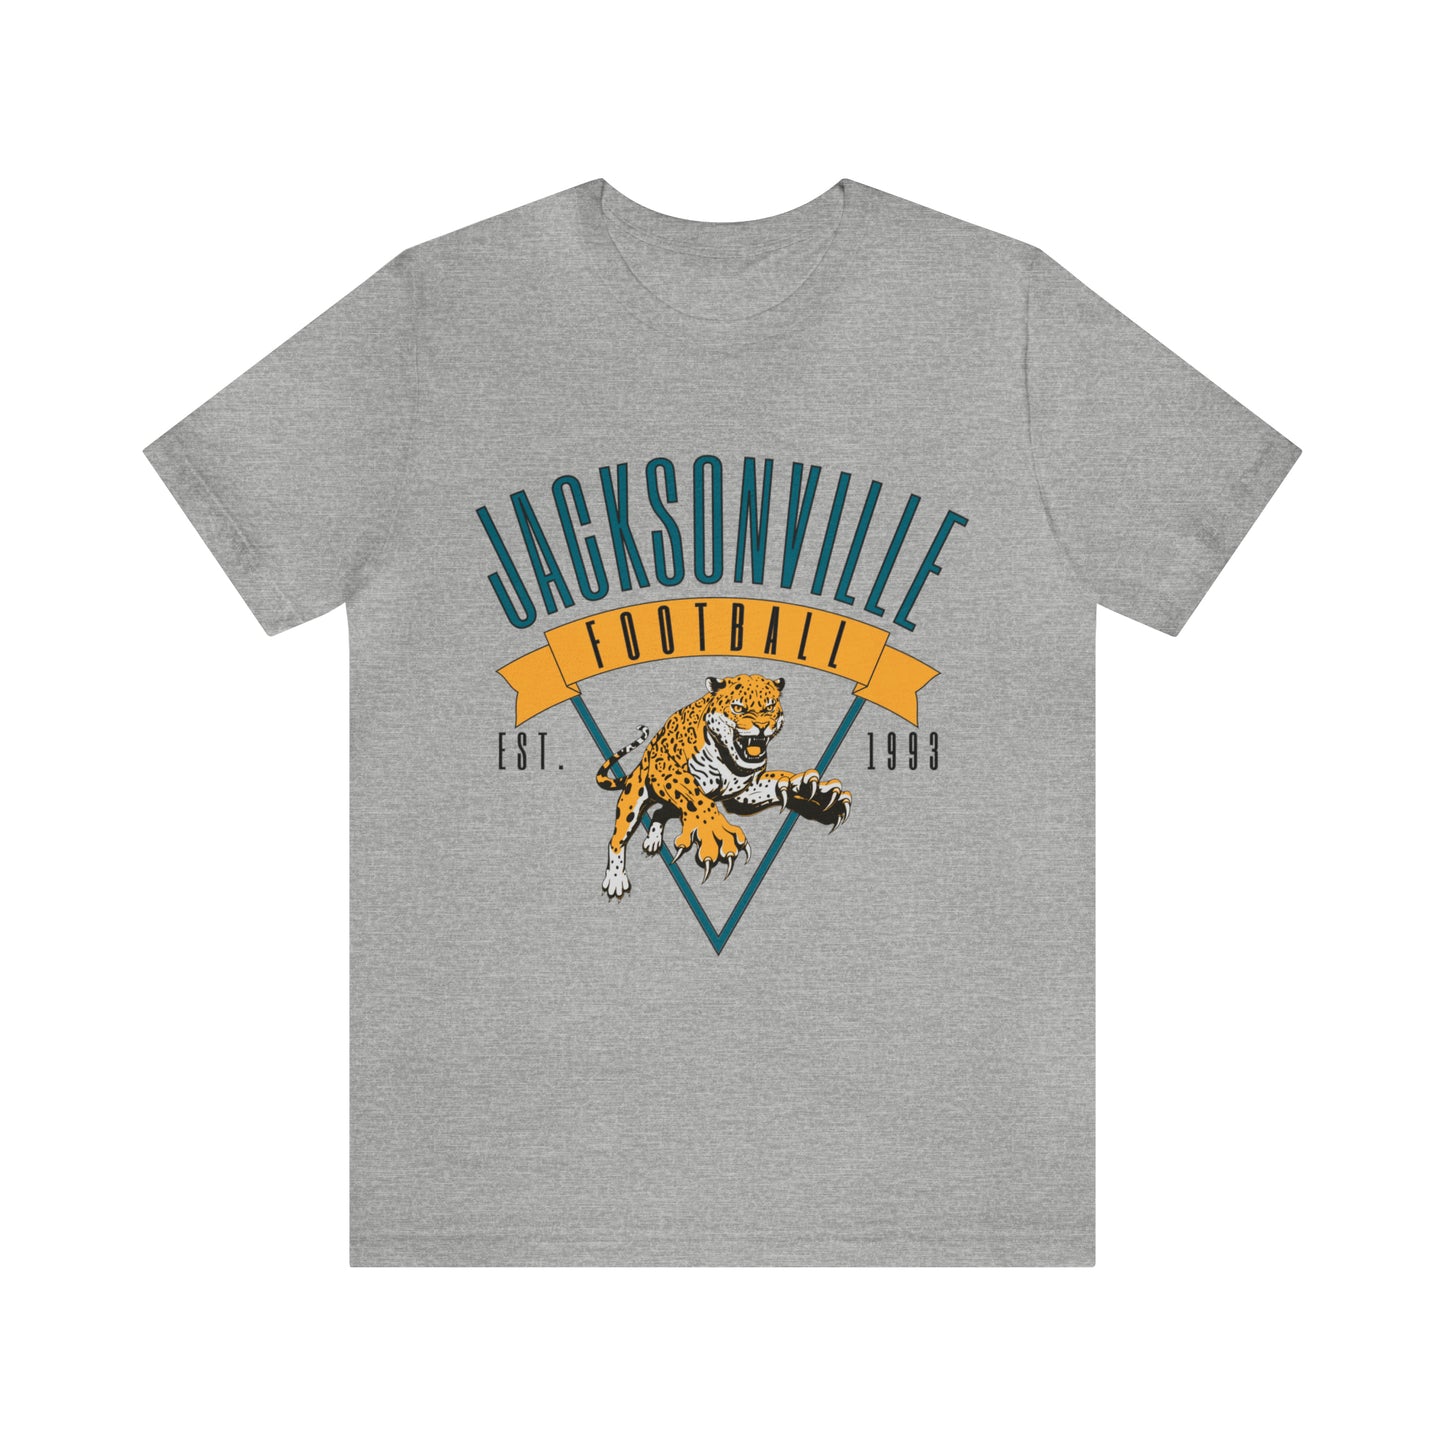 Vintage Jacksonville Jaguars T-Shirt - Retro NFL Football Short Sleeve Oversized Men's & Women's T-Shirt - Design 1